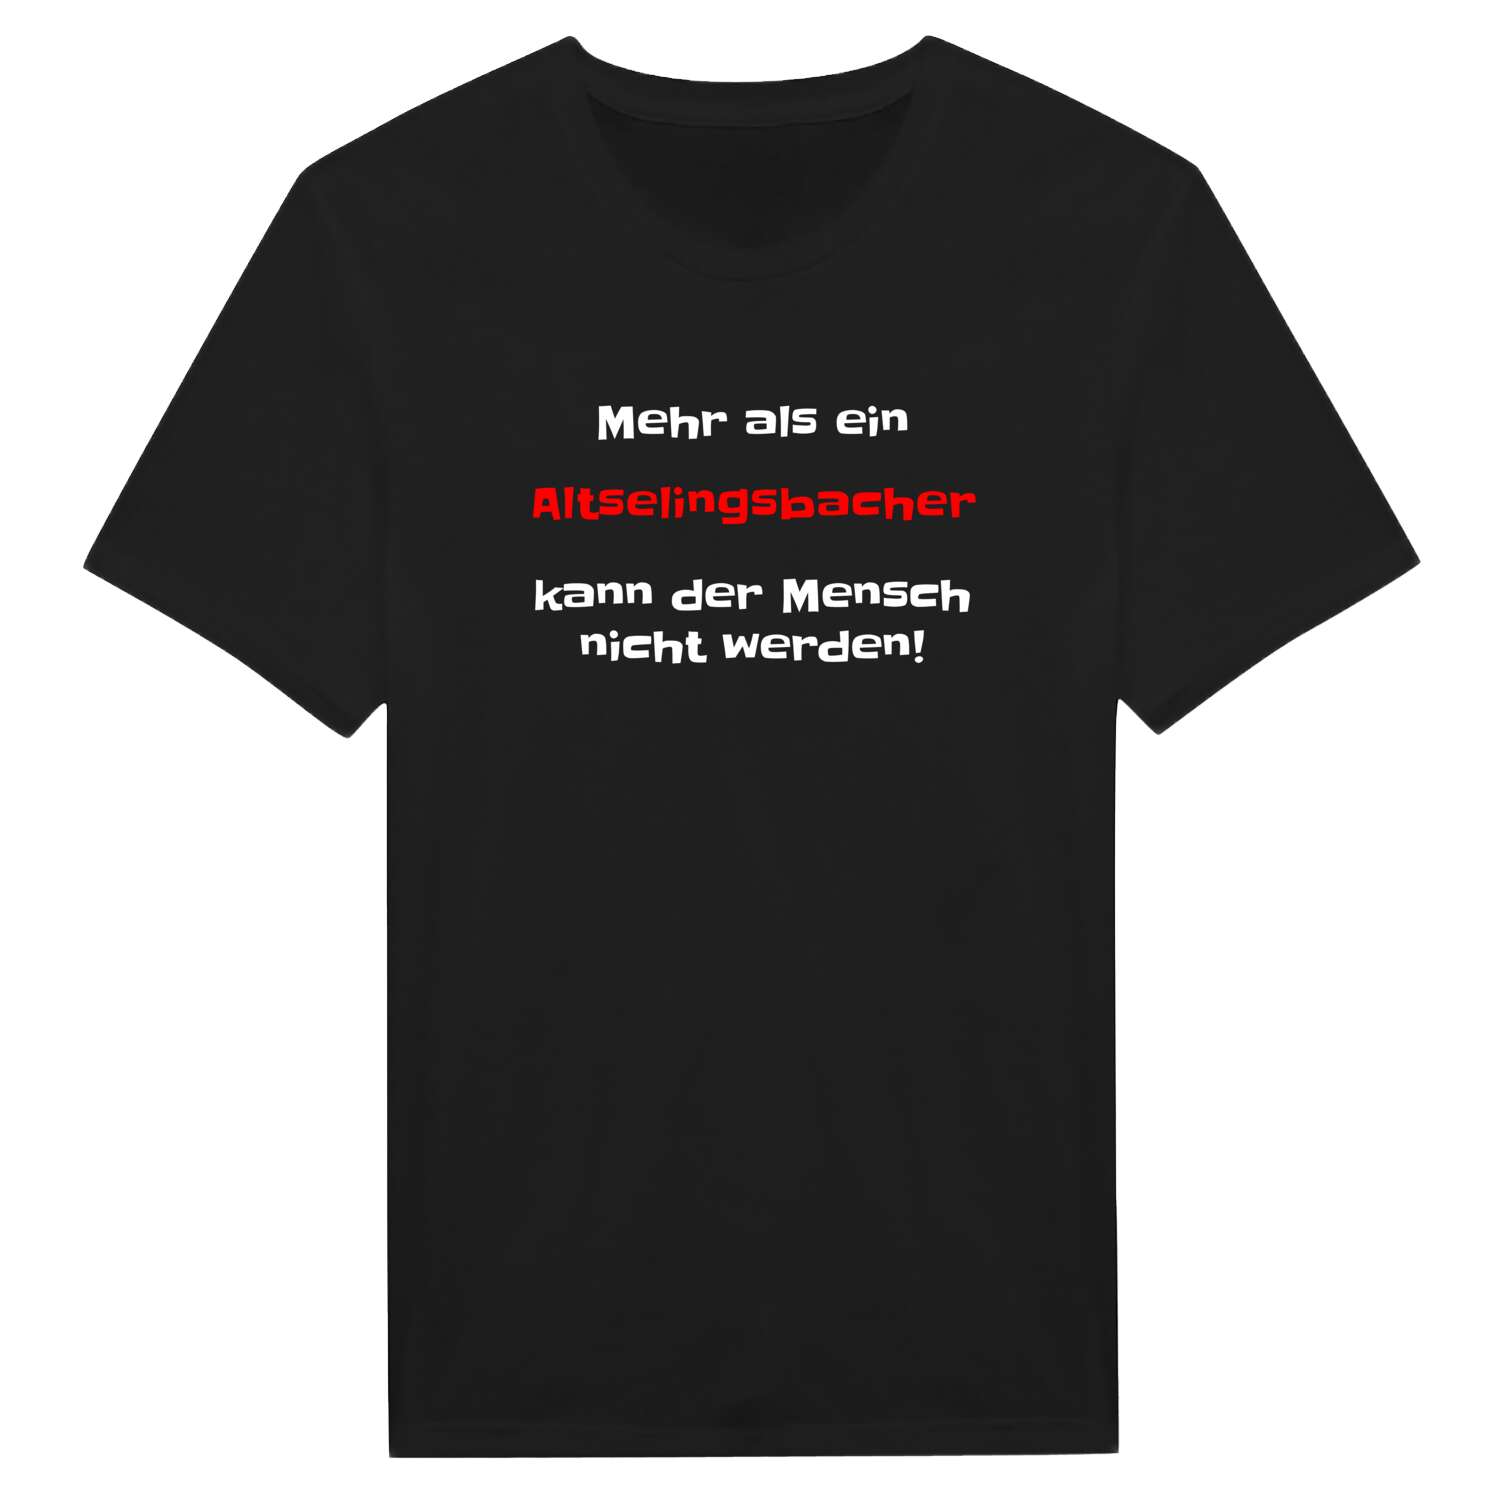 Altselingsbach T-Shirt »Mehr als ein«